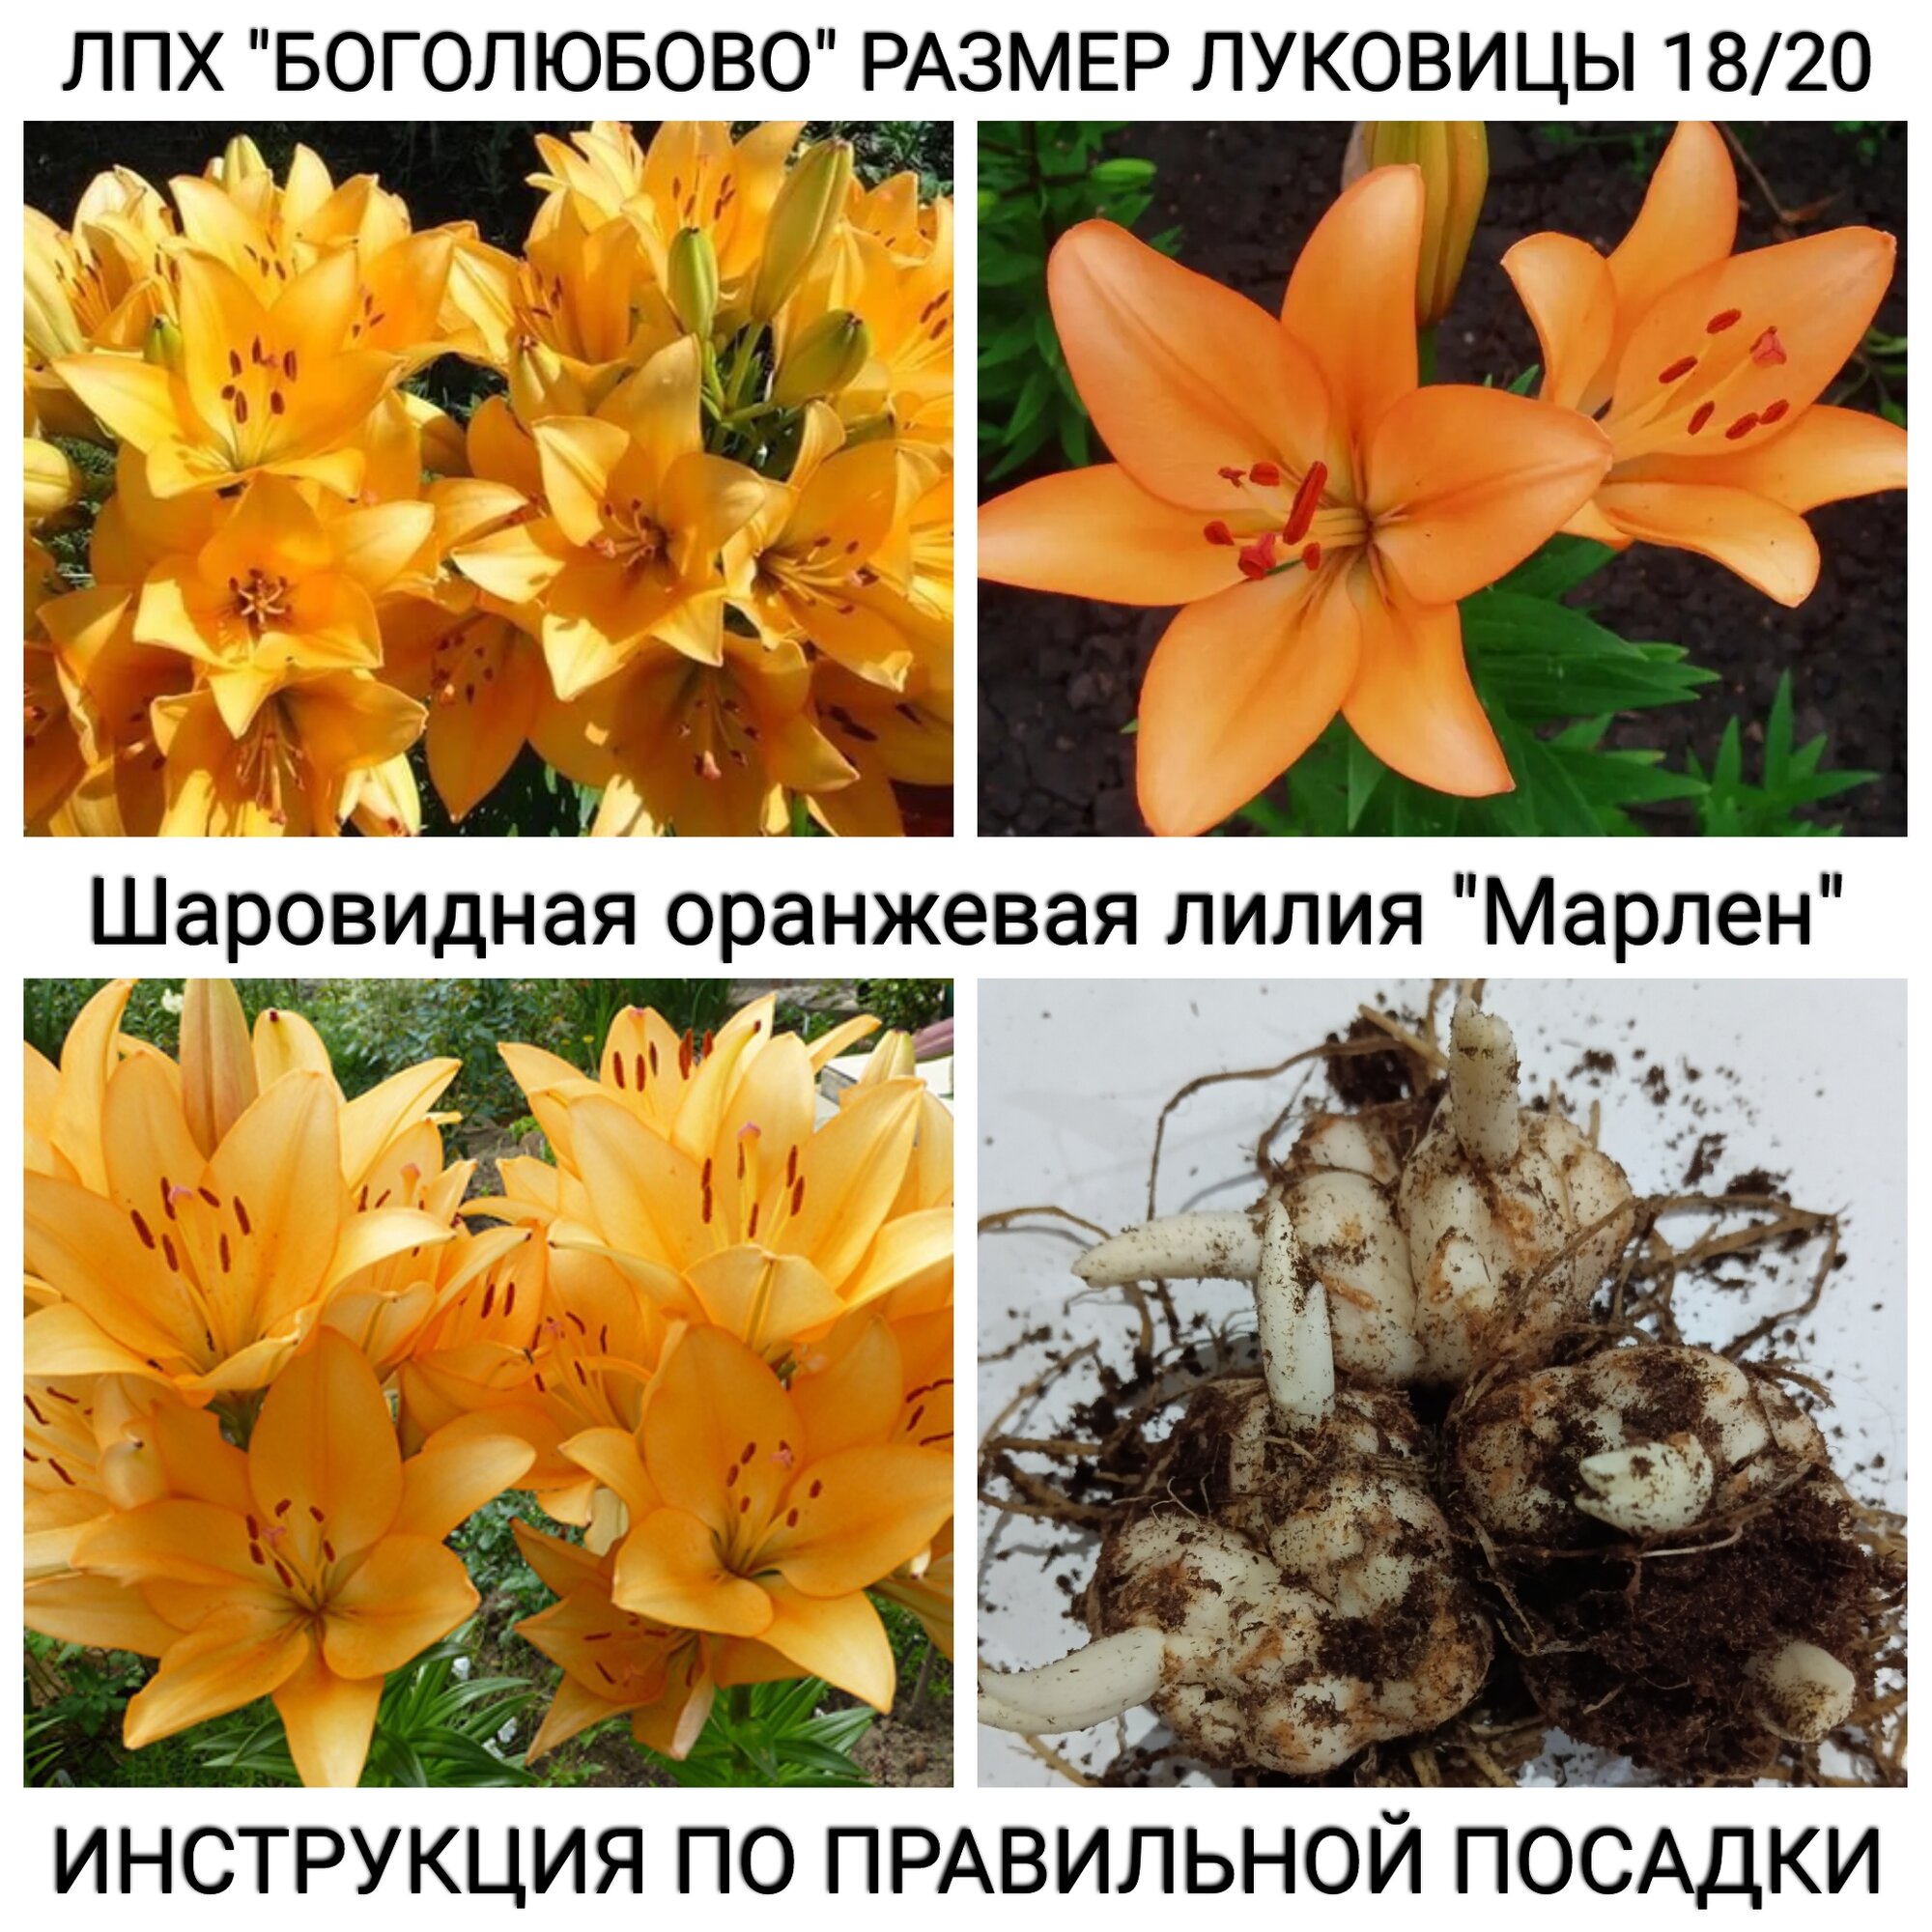 Шаровидная оранжевая лилия "Марлен" Размер луковицы 18/20, упаковка 3 шт.